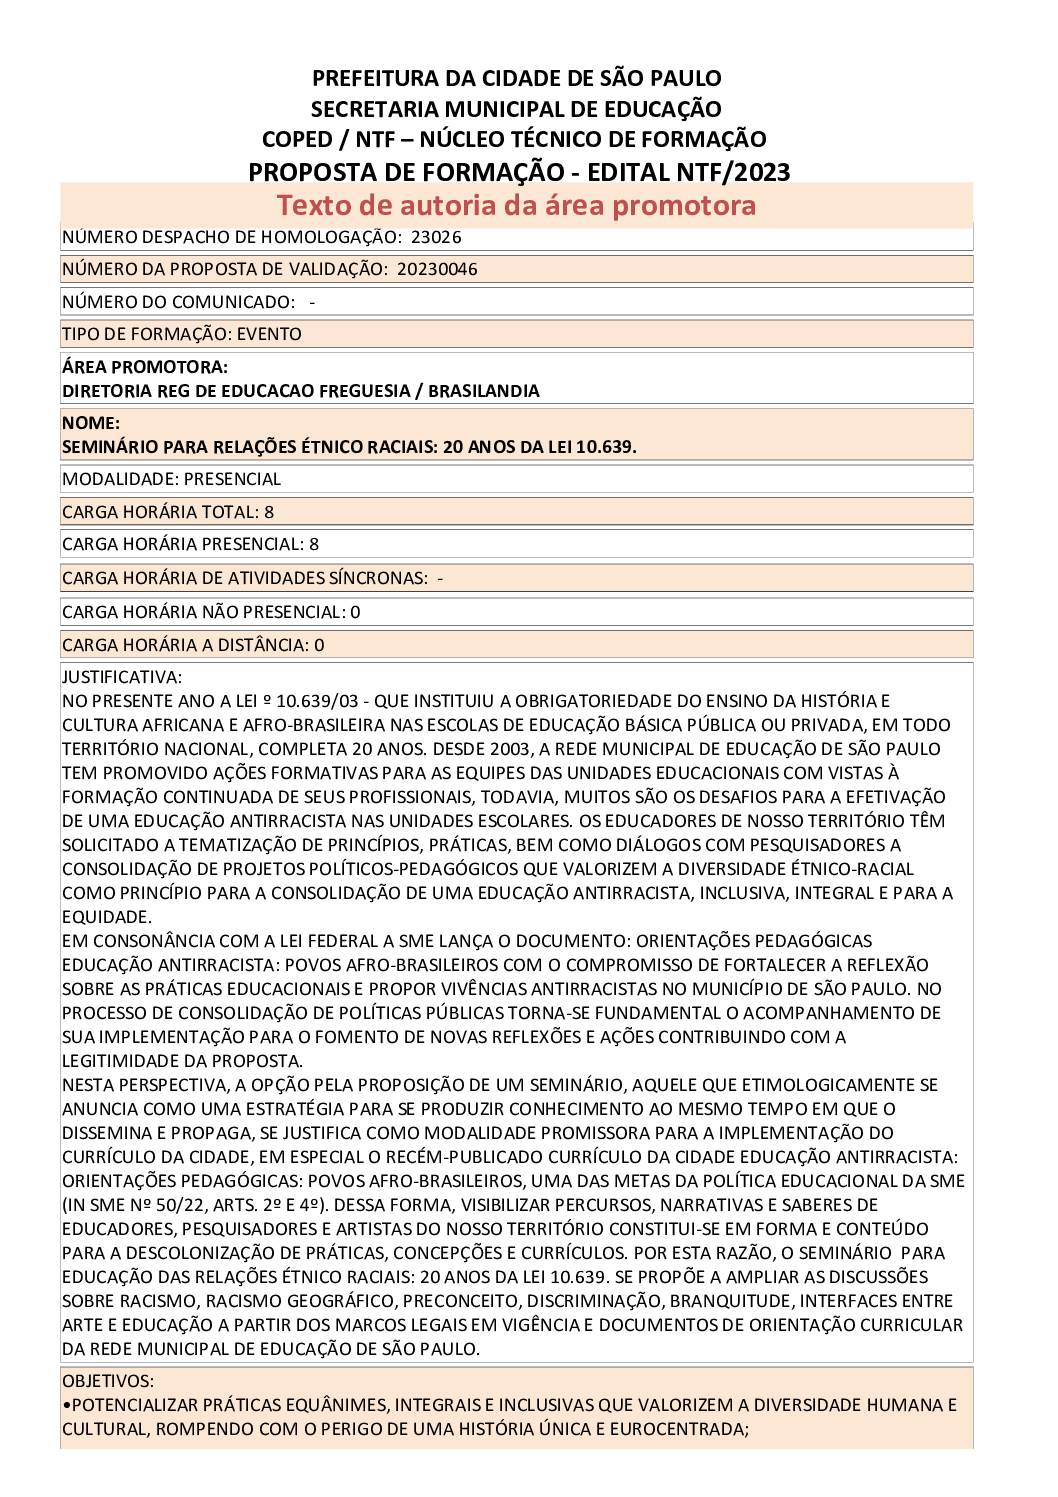 PDF com informações sobre o evento: SEMINÁRIO PARA RELAÇÕES ÉTNICO-RACIAIS: 20 ANOS DA LEI 10.639